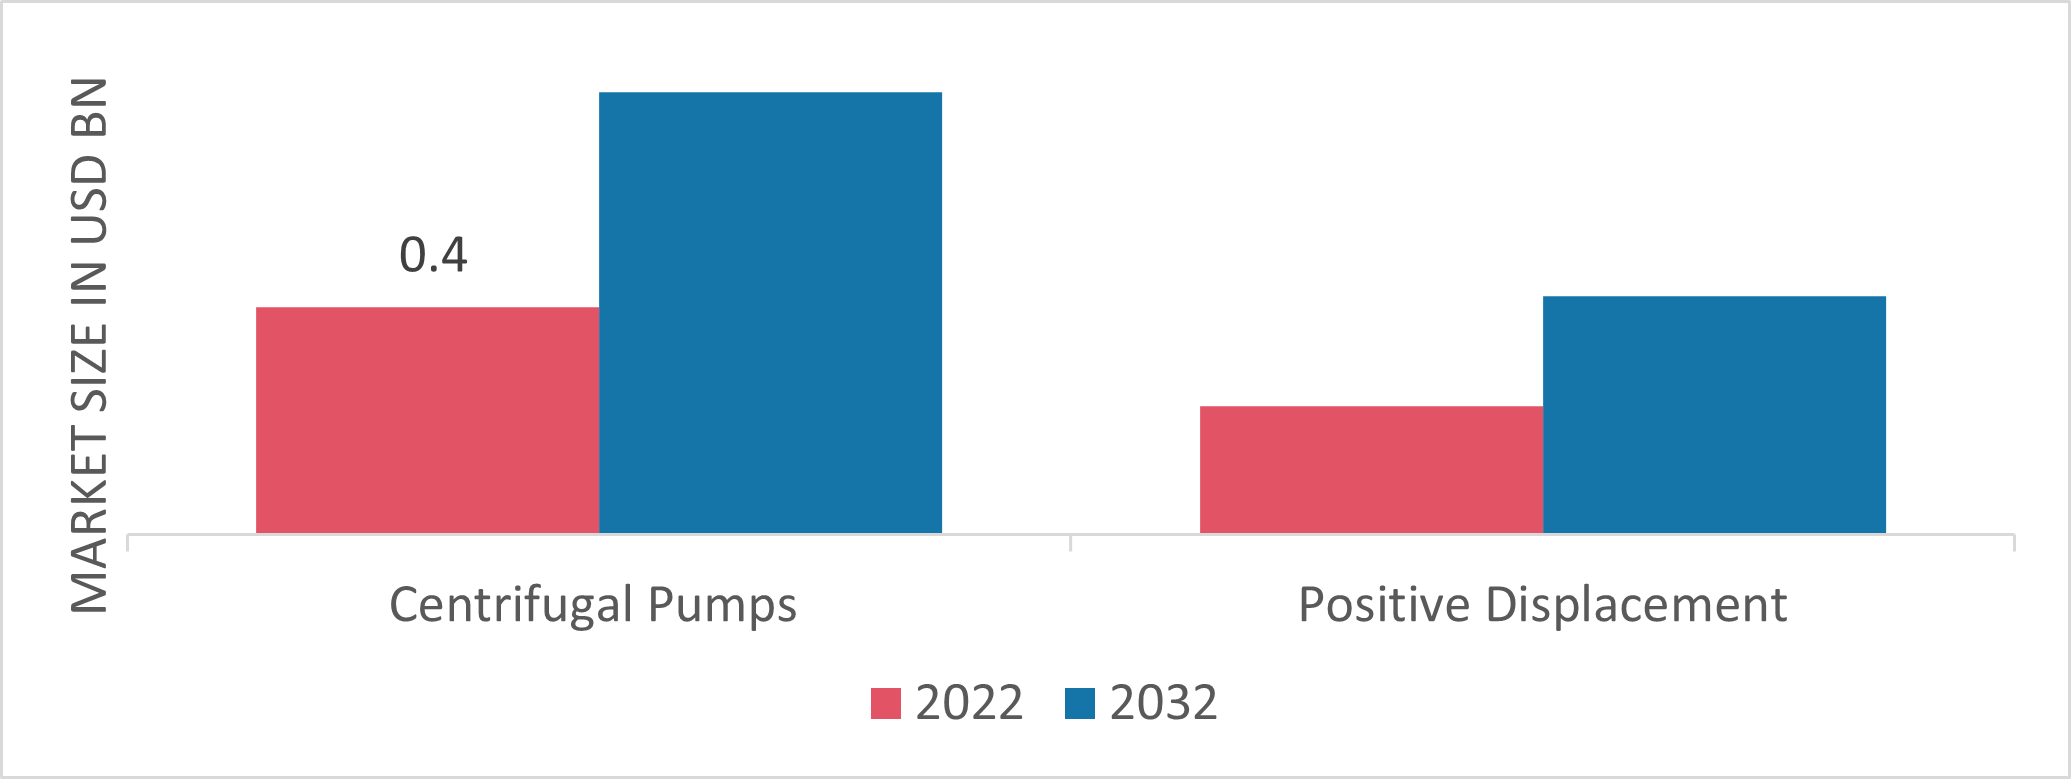 Intelligent Pumps Market, by Type, 2022 & 2032